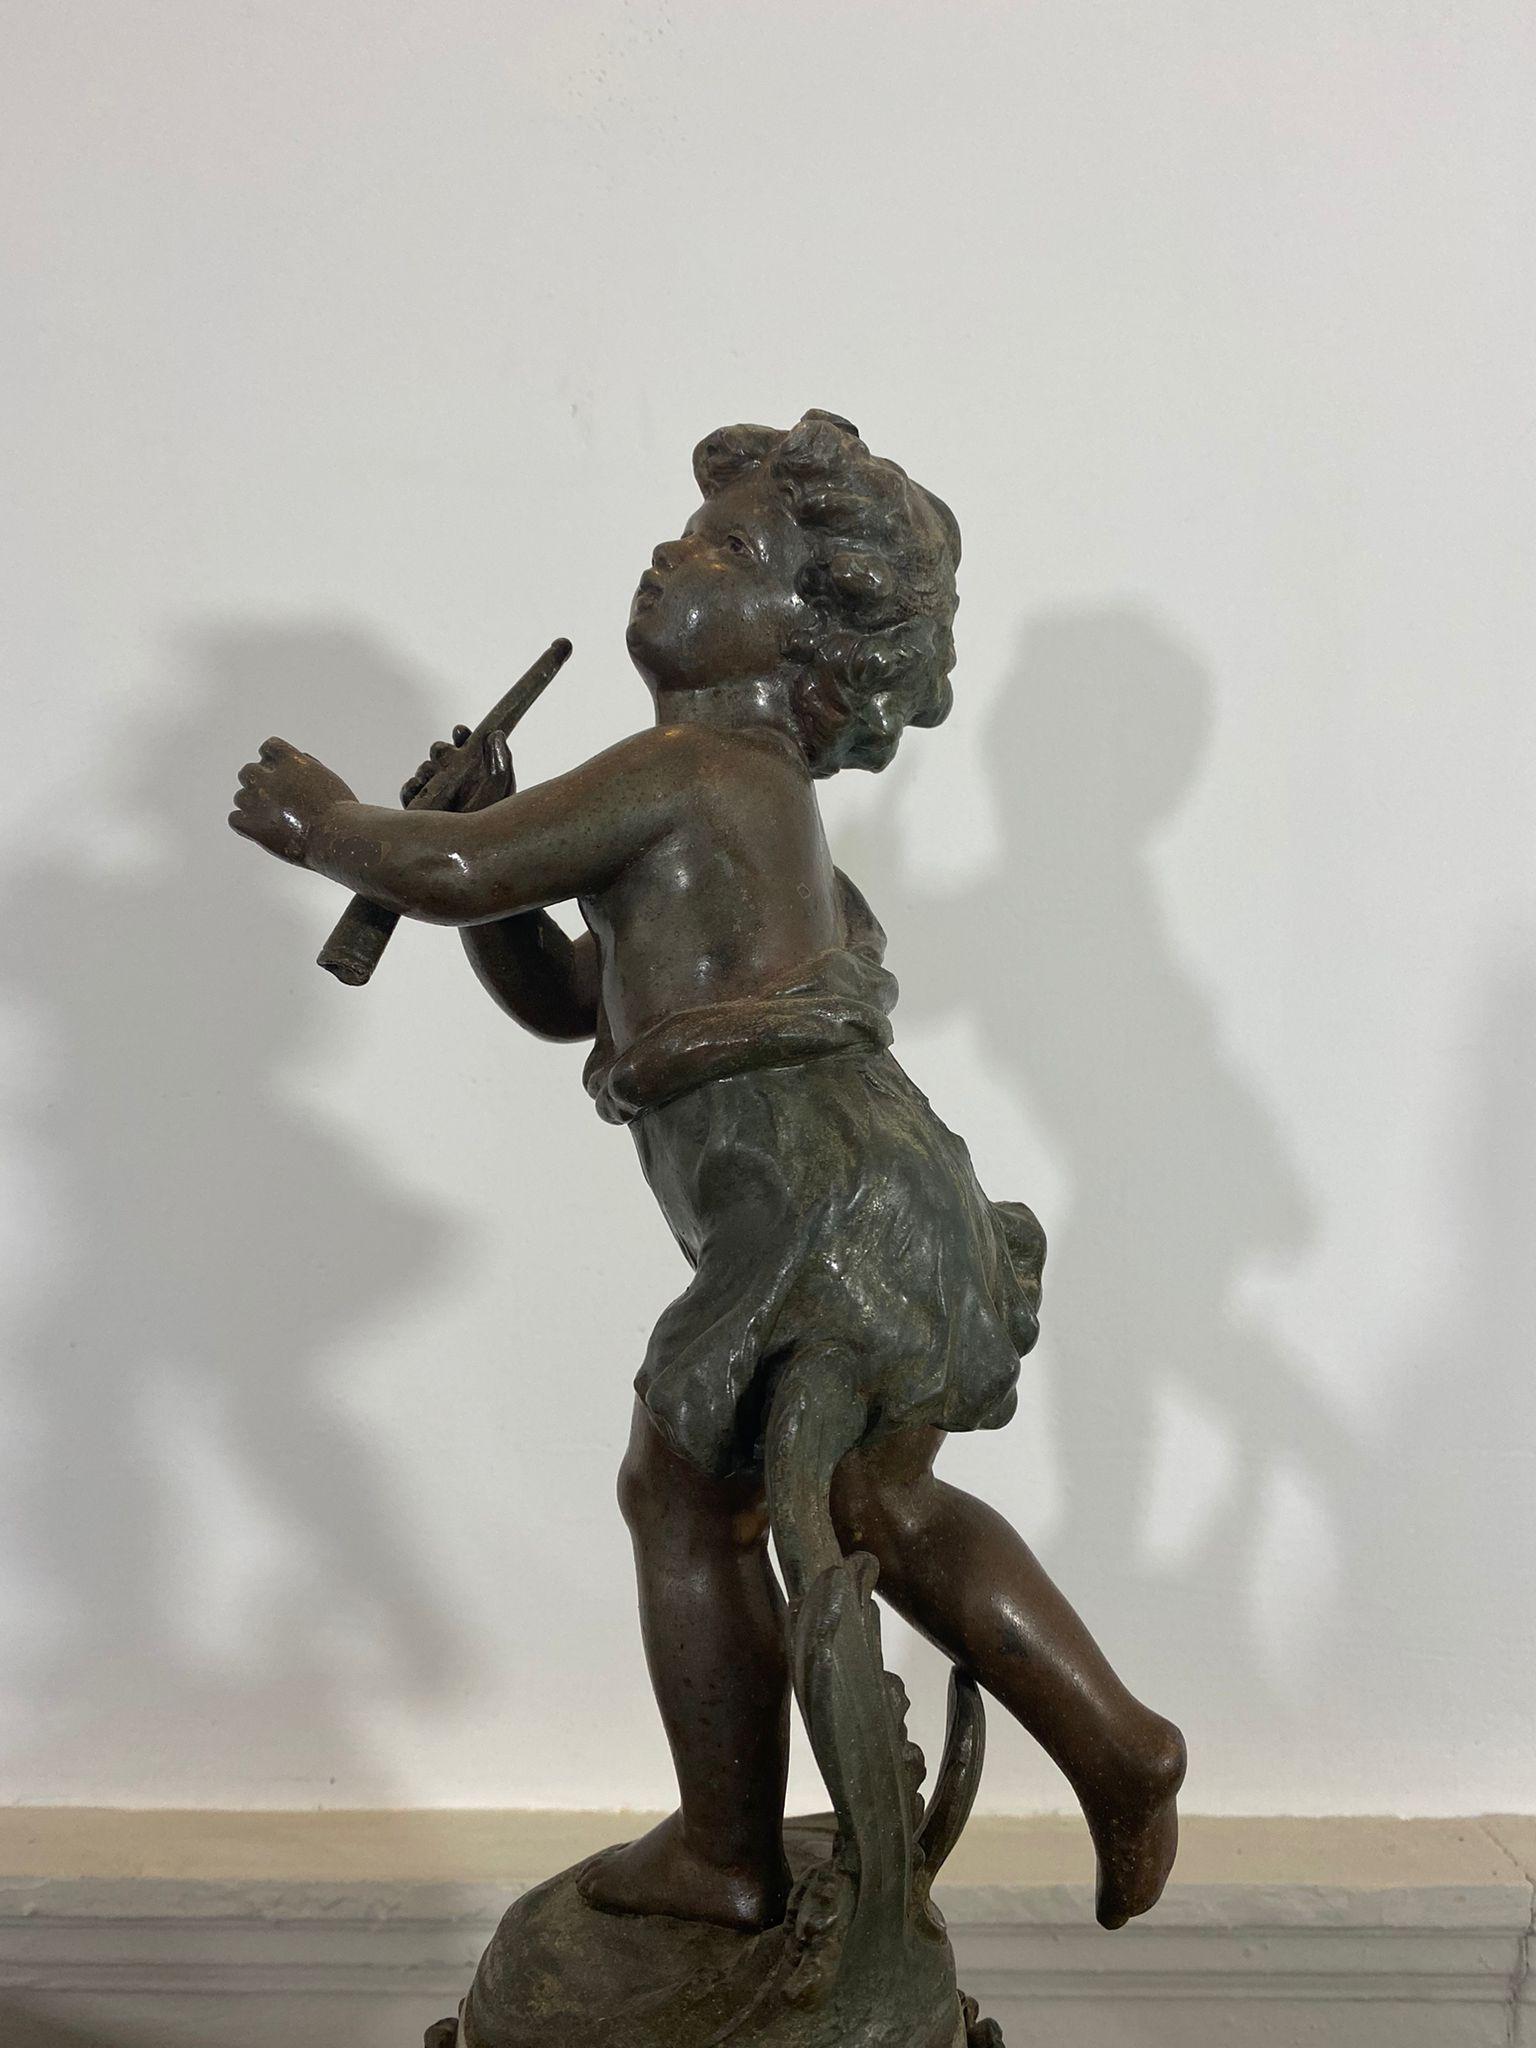 Charmante Skulptur aus Zinn mit Bronzepatina, im Stil von Auguste Moreau, die einen jungen Flötenspieler in Landhauskleidung darstellt, der seine Flöte in der linken Hand hält und in Bewegung zu sein scheint (durch die Position seiner Beine und den